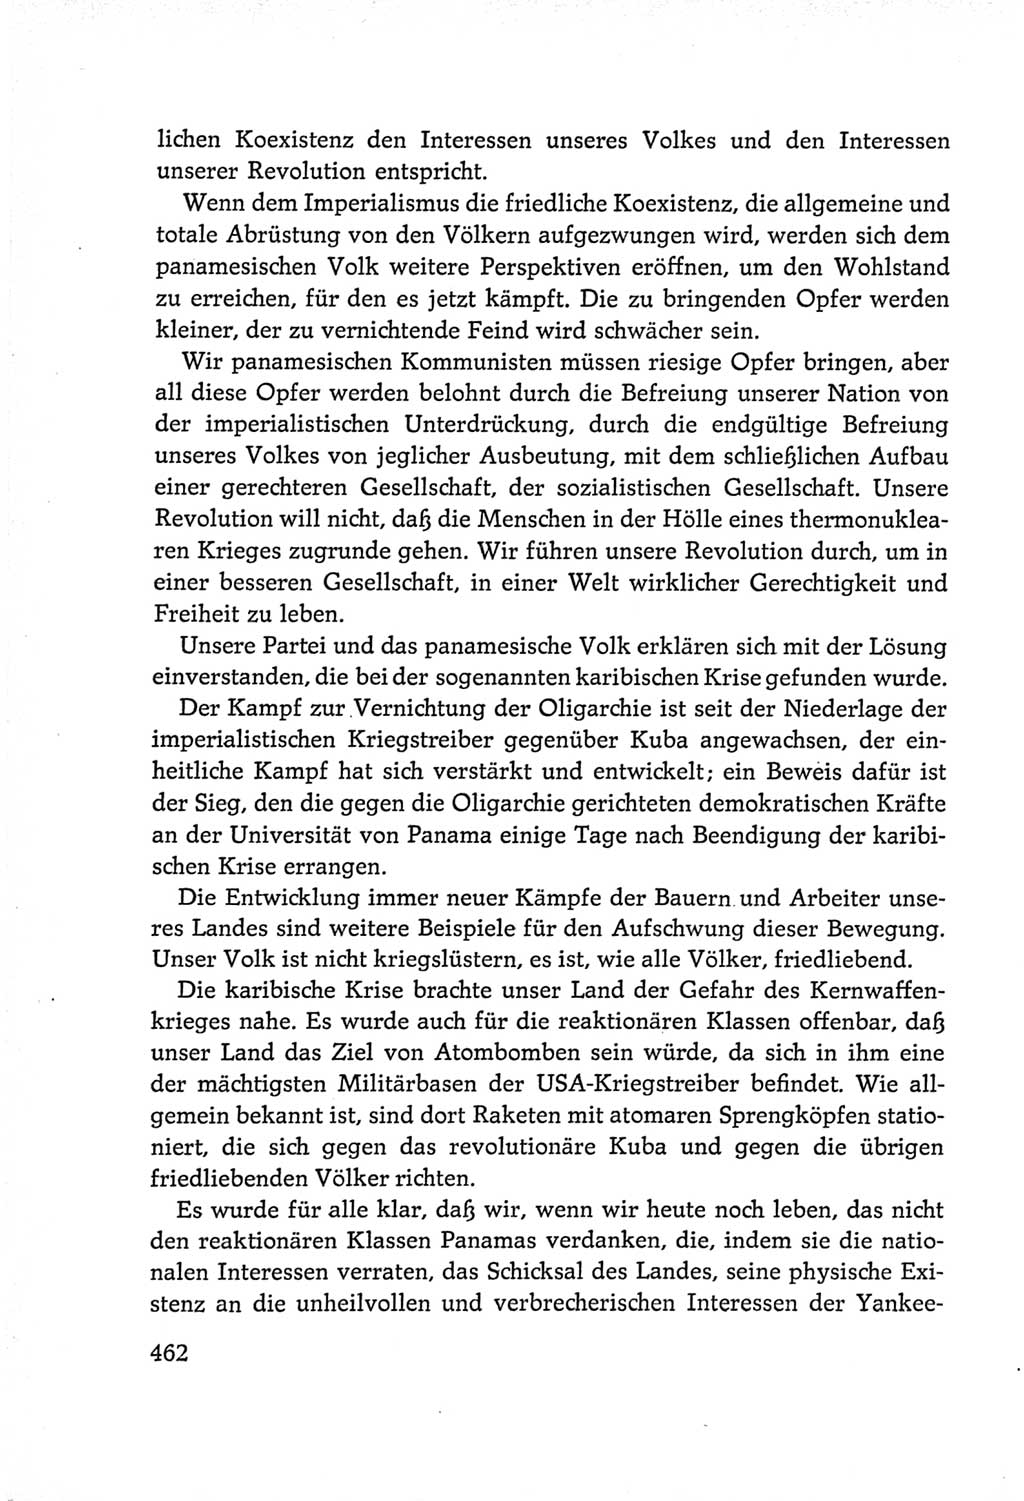 Protokoll der Verhandlungen des Ⅵ. Parteitages der Sozialistischen Einheitspartei Deutschlands (SED) [Deutsche Demokratische Republik (DDR)] 1963, Band Ⅱ, Seite 462 (Prot. Verh. Ⅵ. PT SED DDR 1963, Bd. Ⅱ, S. 462)